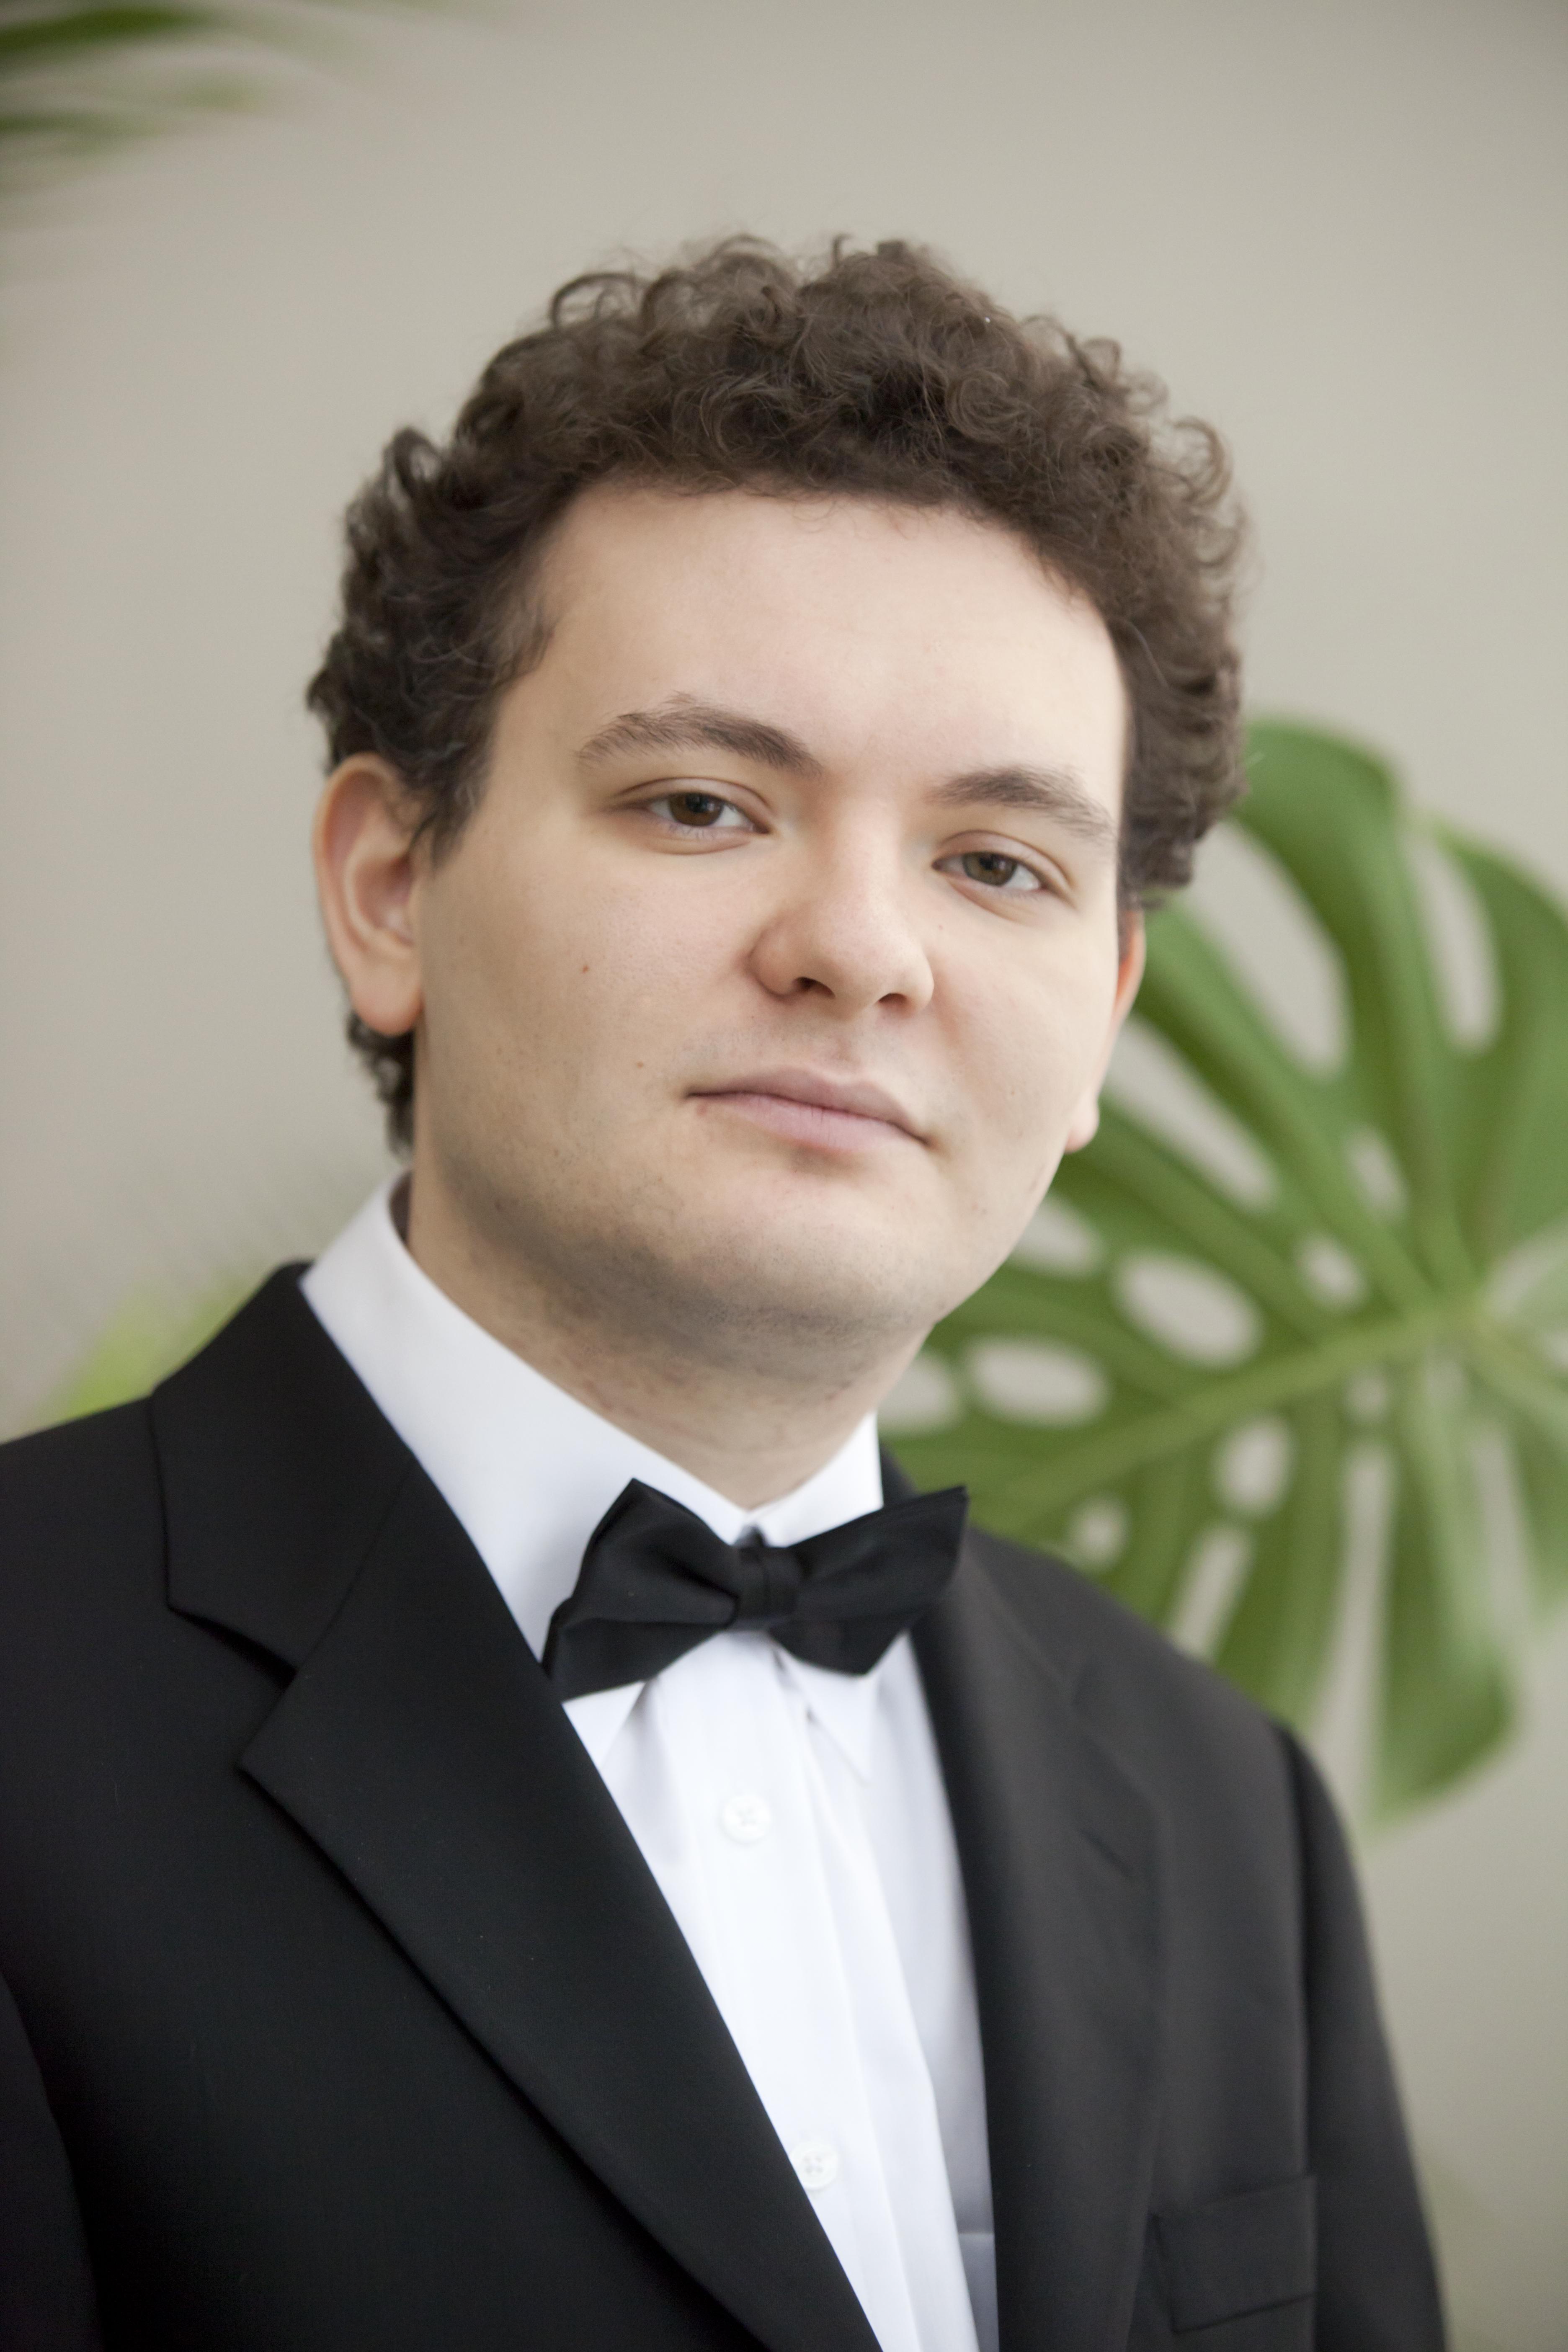 ピアノ五重奏曲には1986年生まれの若きピアニストが登場する （c）Dmitri Bocharov